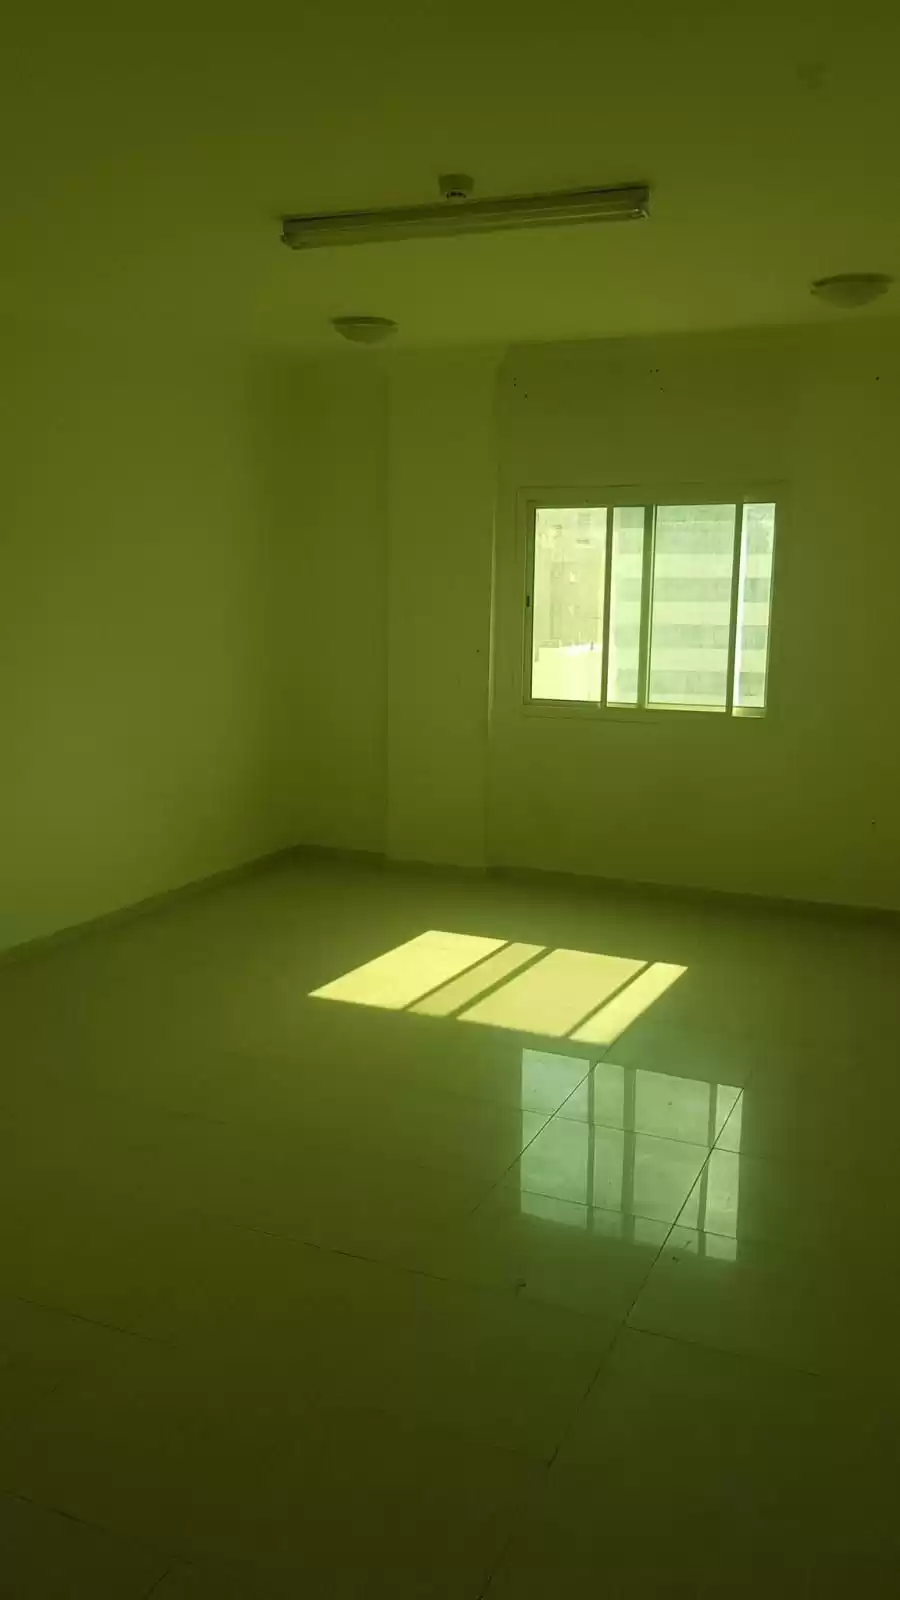 سكني عقار جاهز 2 غرف  غير مفروش شقة  للإيجار في السد , الدوحة #14737 - 1  صورة 